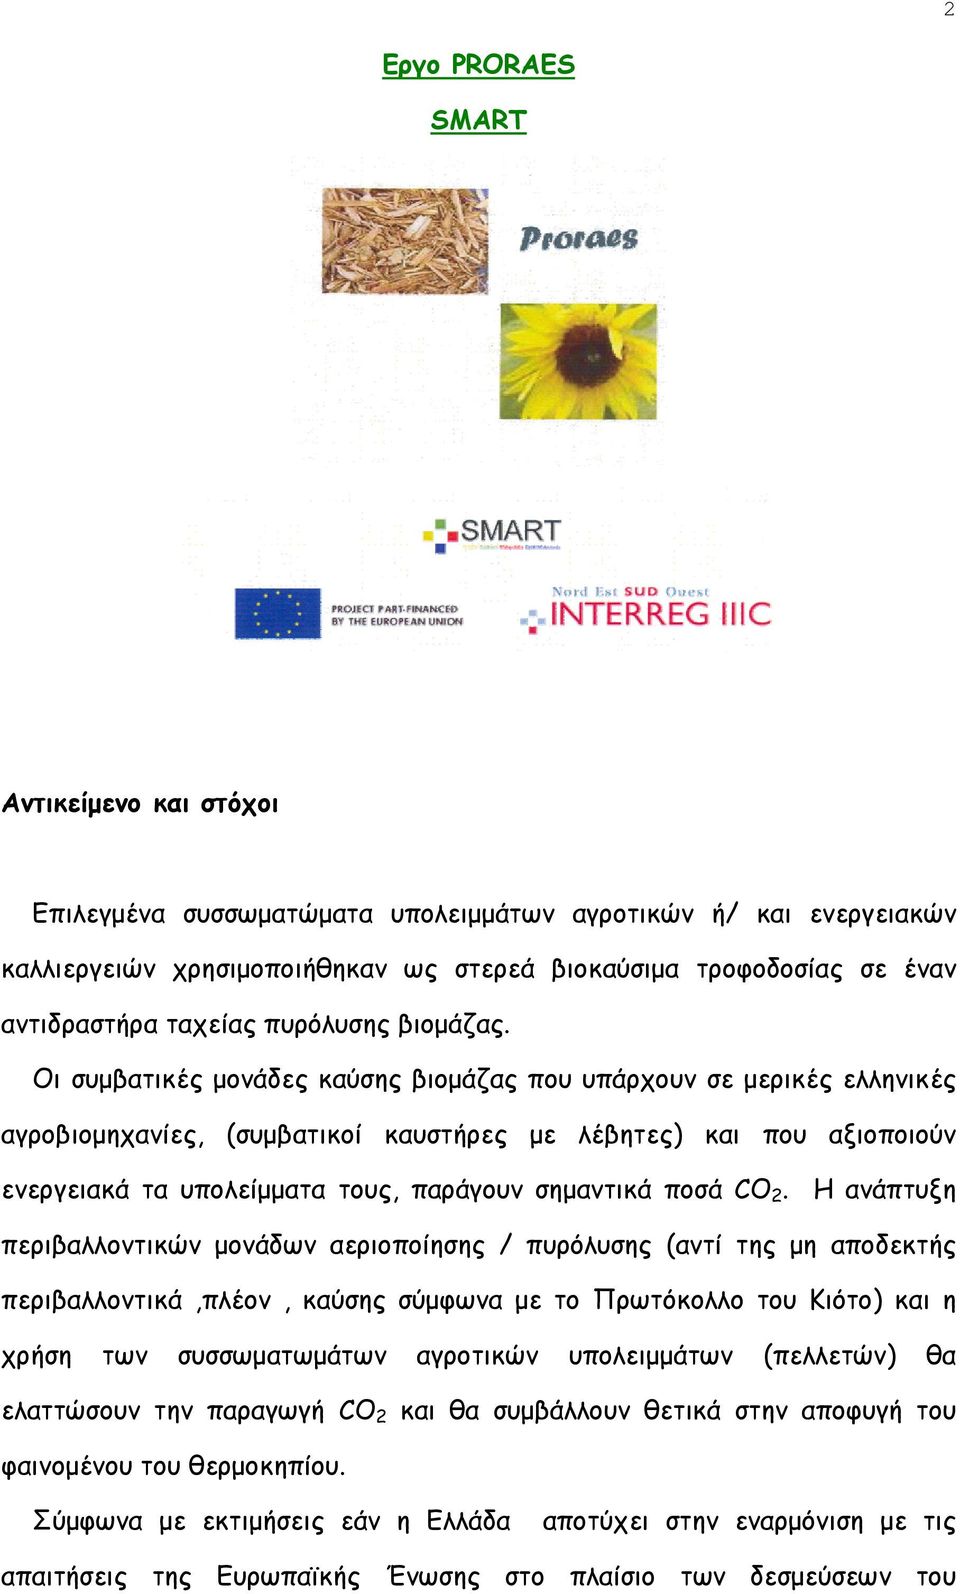 Οι συμβατικές μονάδες καύσης βιομάζας που υπάρχουν σε μερικές ελληνικές αγροβιομηχανίες, (συμβατικοί καυστήρες με λέβητες) και που αξιοποιούν ενεργειακά τα υπολείμματα τους, παράγουν σημαντικά ποσά